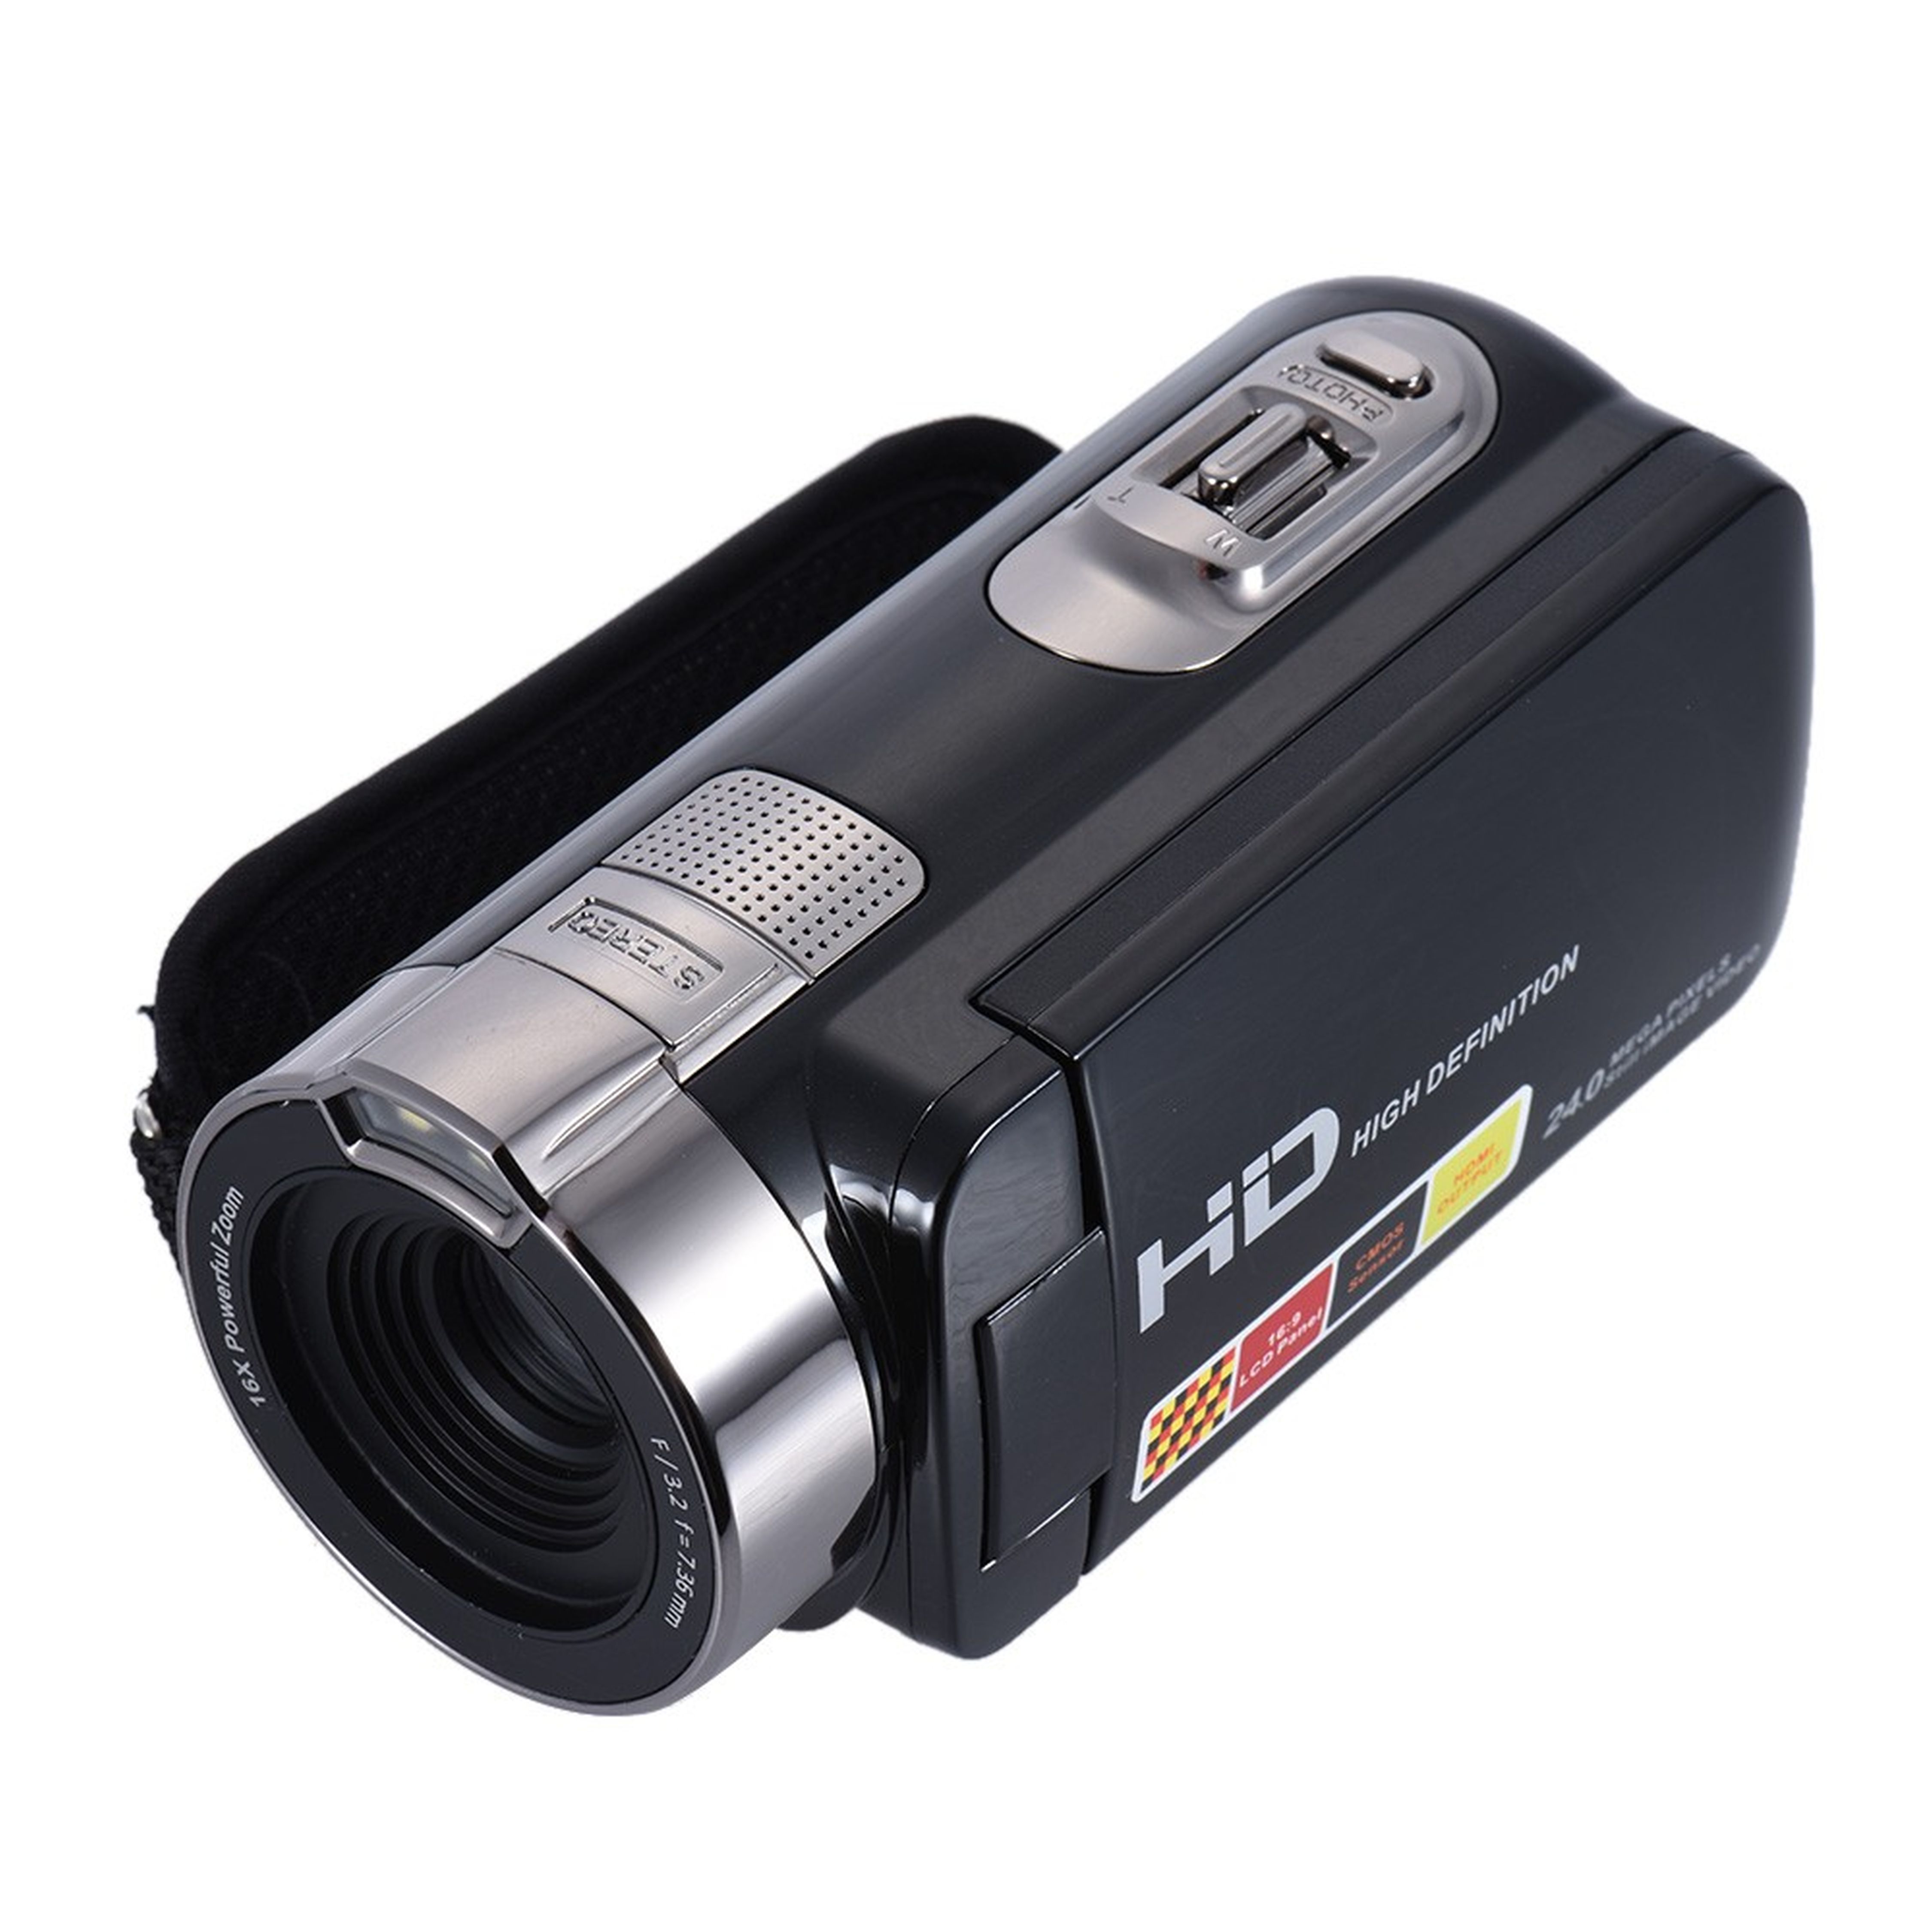 Verrückt! HDV-302P HD Camcorder für 31,45 Euro inkl. Versand!